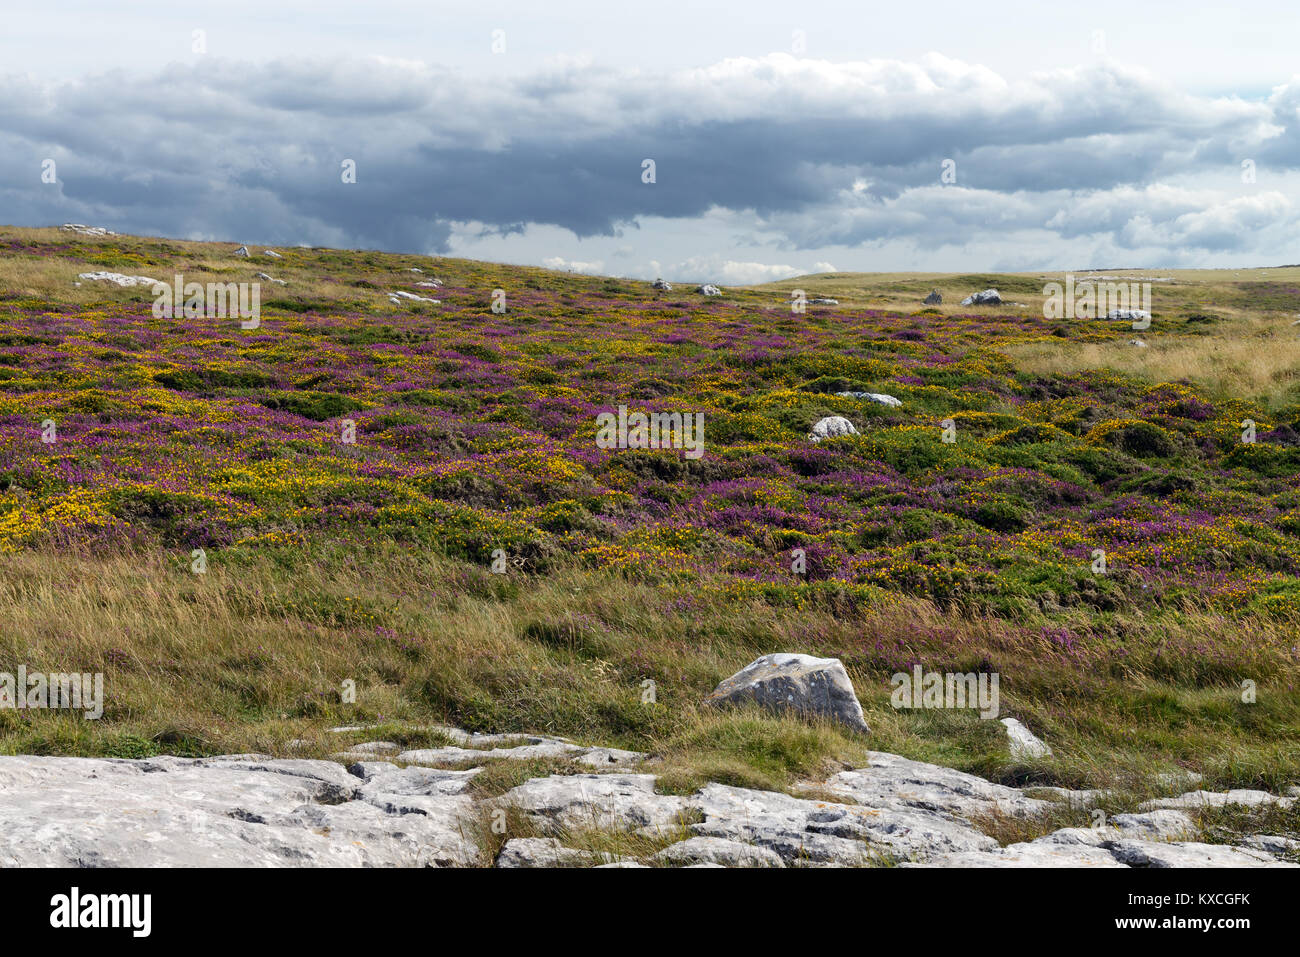 Kalkstein Heide, hier auf die Great Orme in Nord Wales, ist selten Lebensraum. Eine beträchtliche Menge an Boden auslaugen ist erforderlich, bevor sie sich entwickeln können. Stockfoto